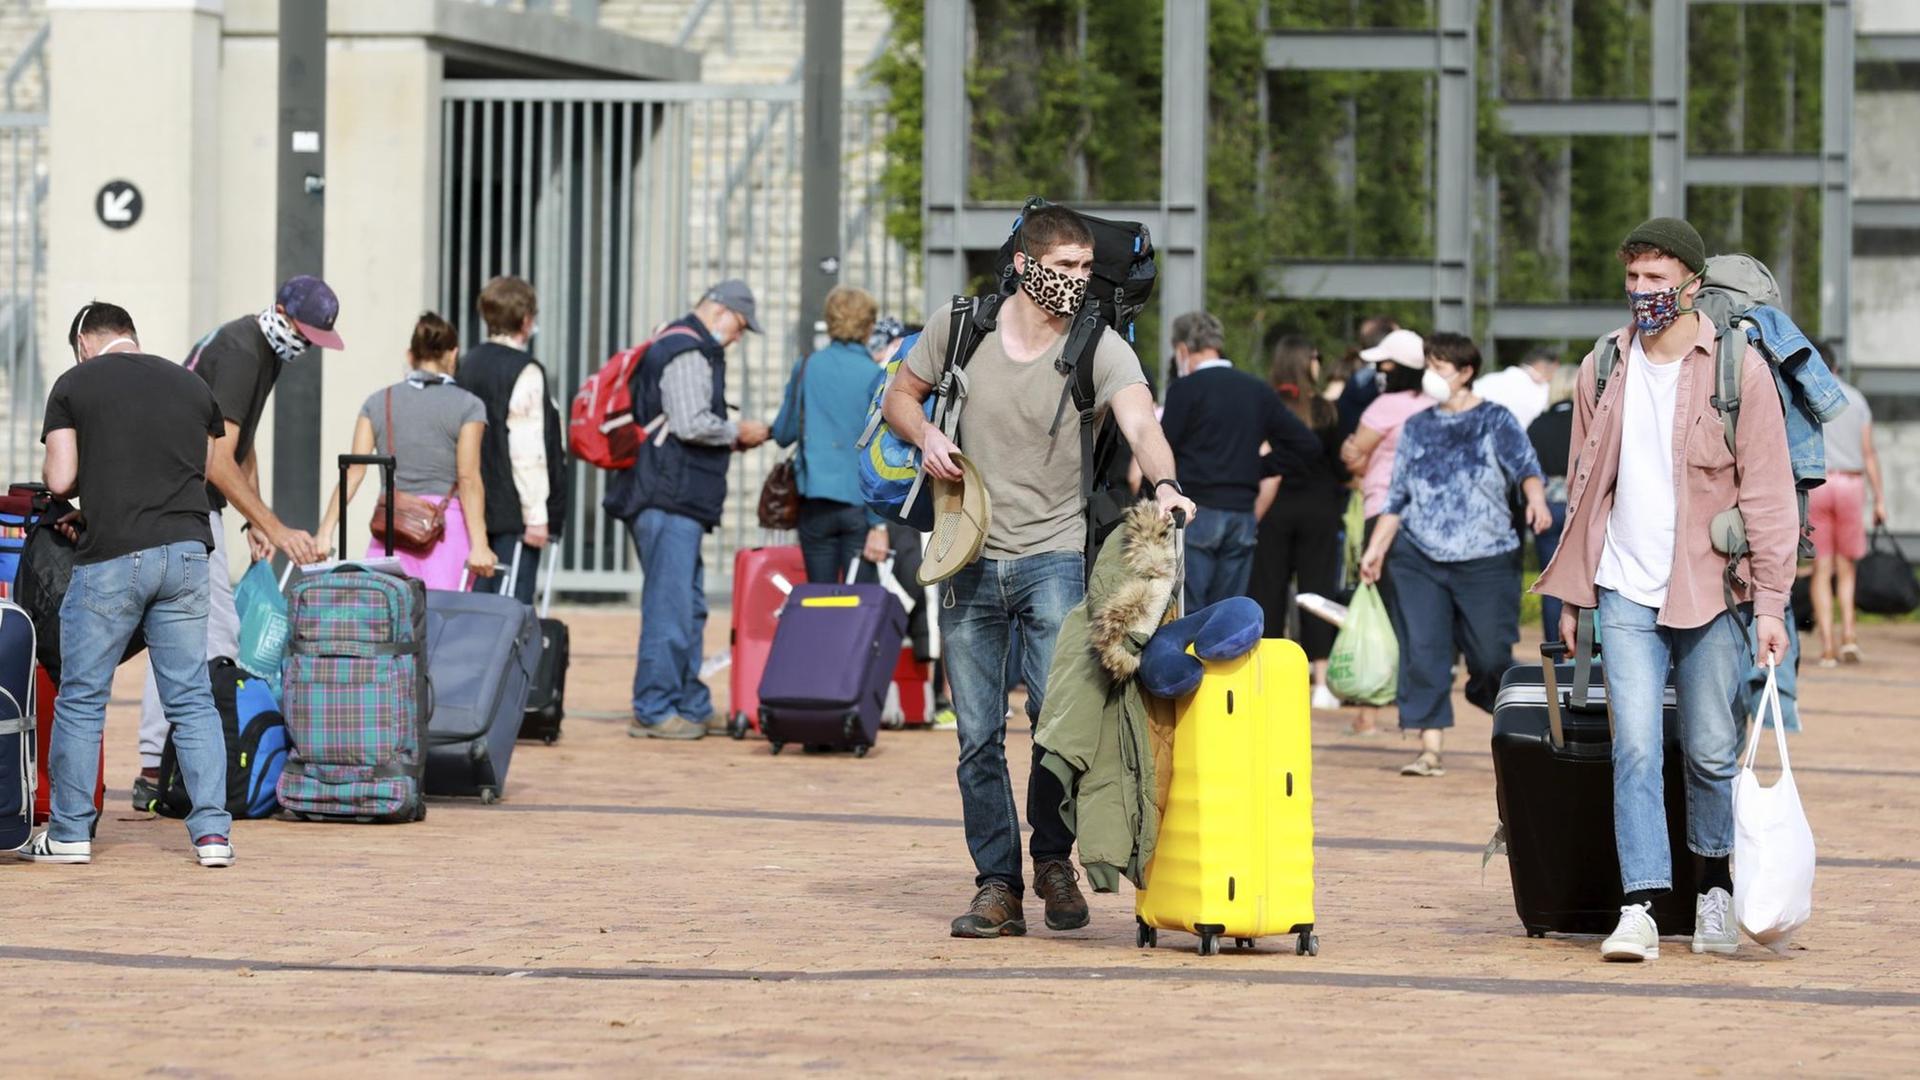 Deutsche Touristen stehen mit Gepäck im Kapstadt-Stadion, bevor sie mit einem Charterflug von Südafrika nach Deutschland reisen.